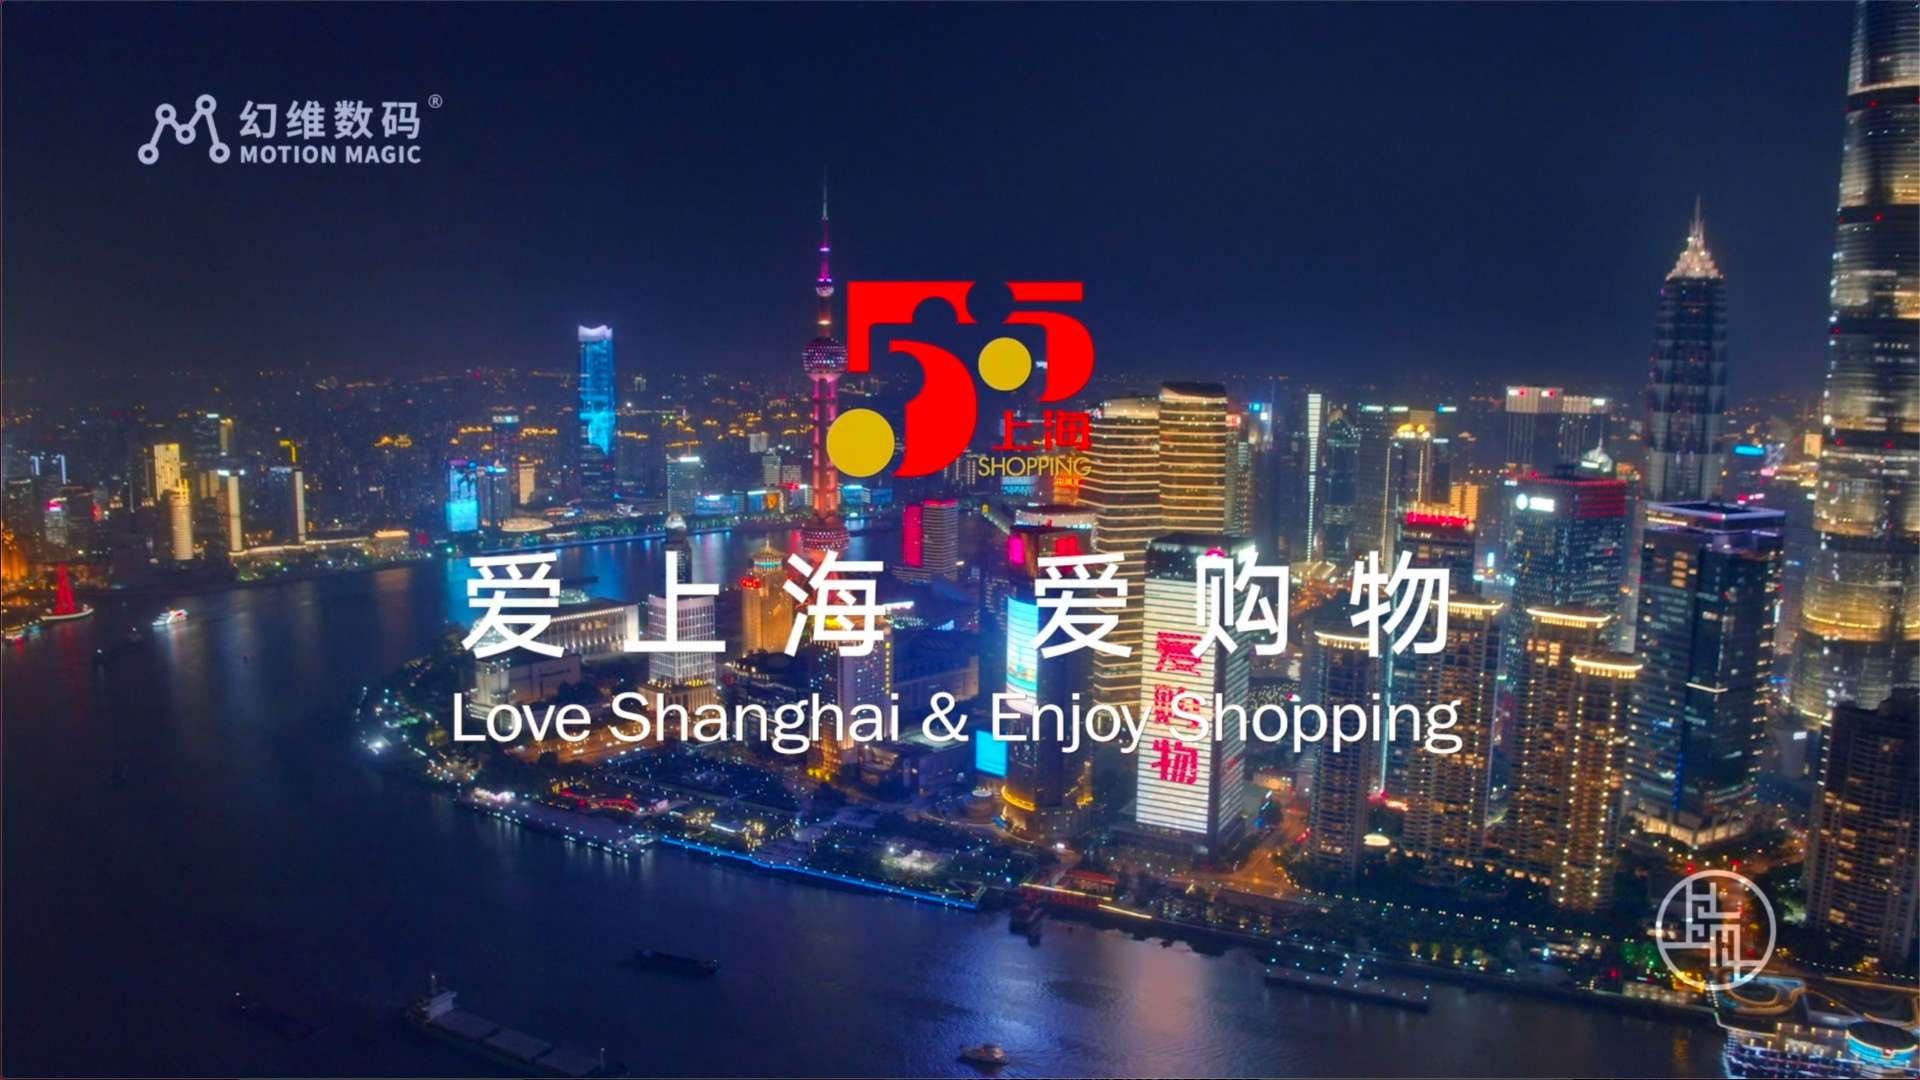 《爱上海 爱购物-上海国际消费城市推介片》-宣传片